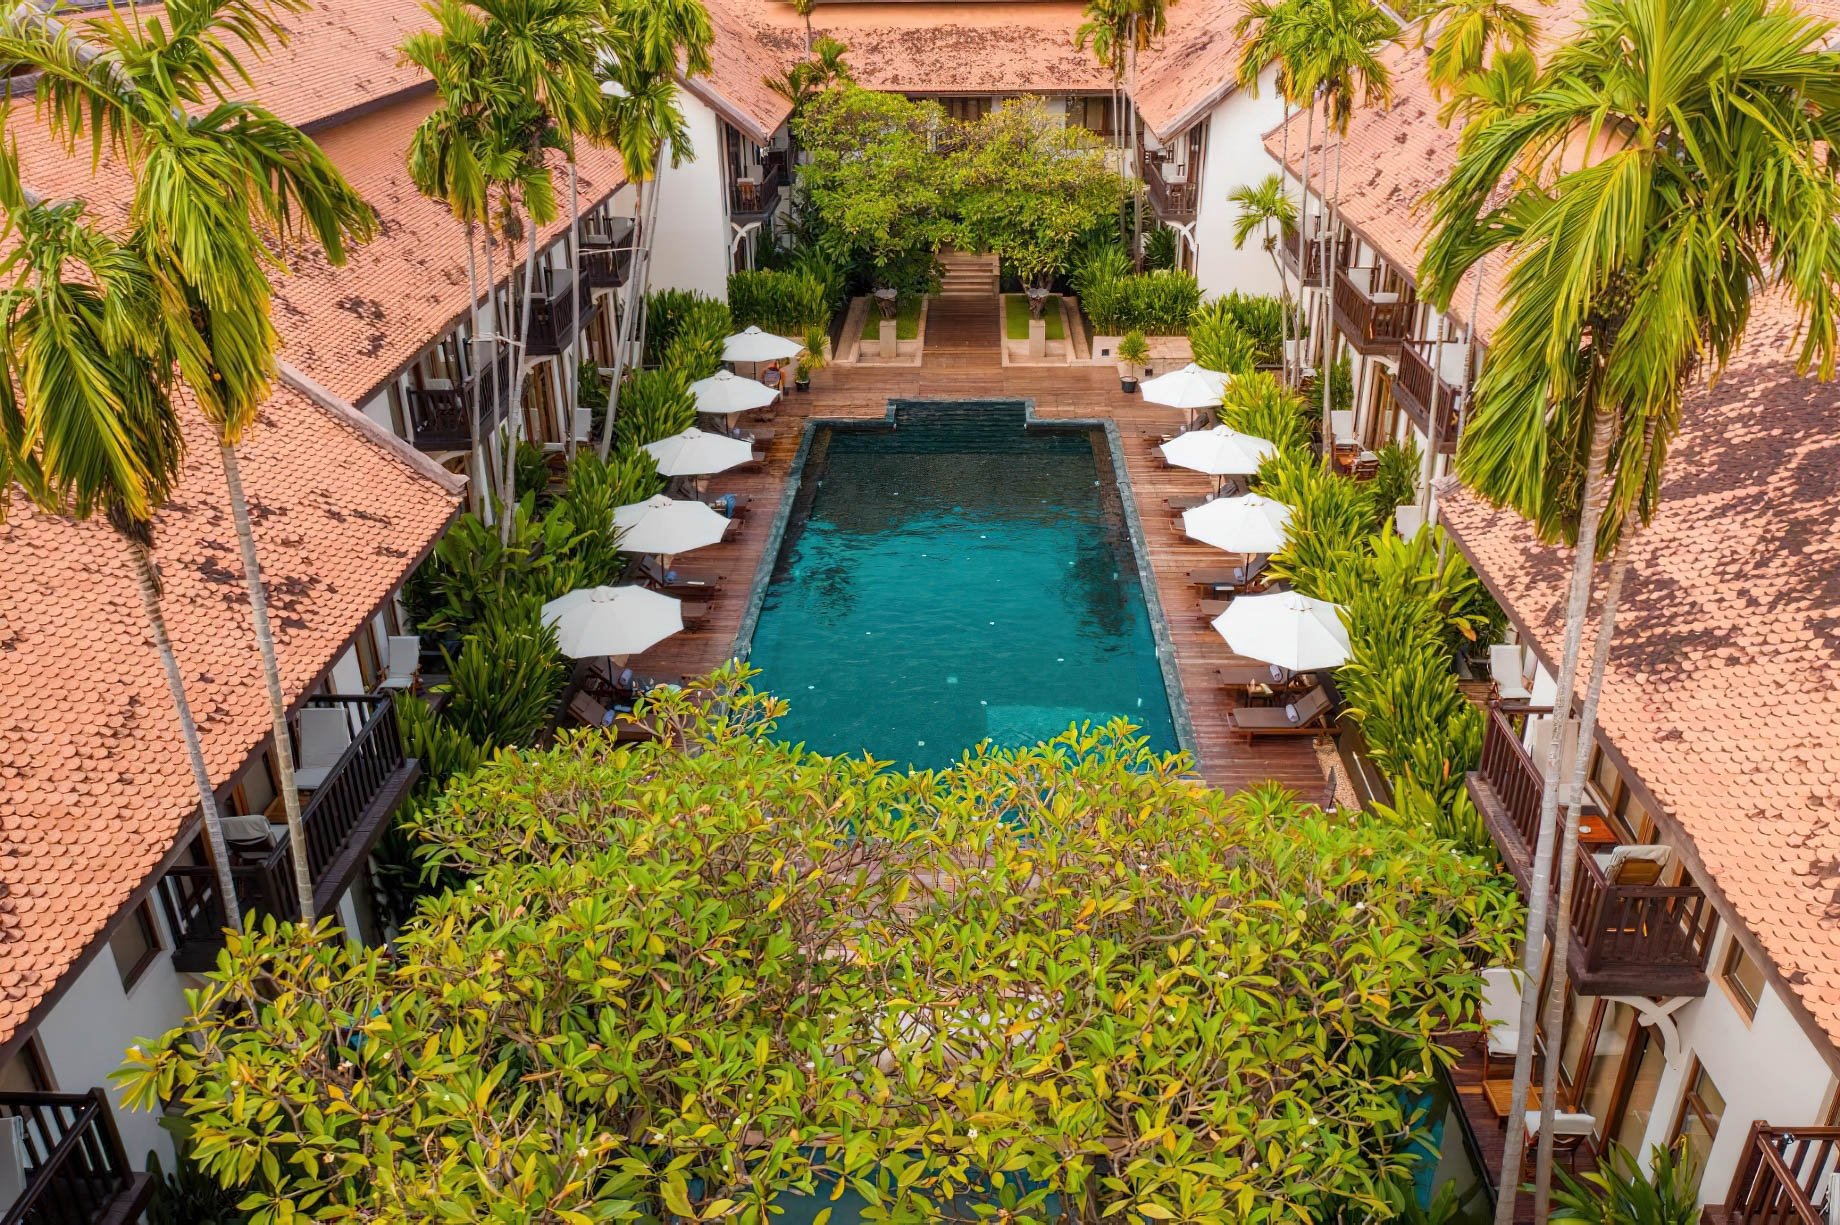 Anantara Angkor Resort – Siem Reap, Cambodia – Pool Deck Aerial View